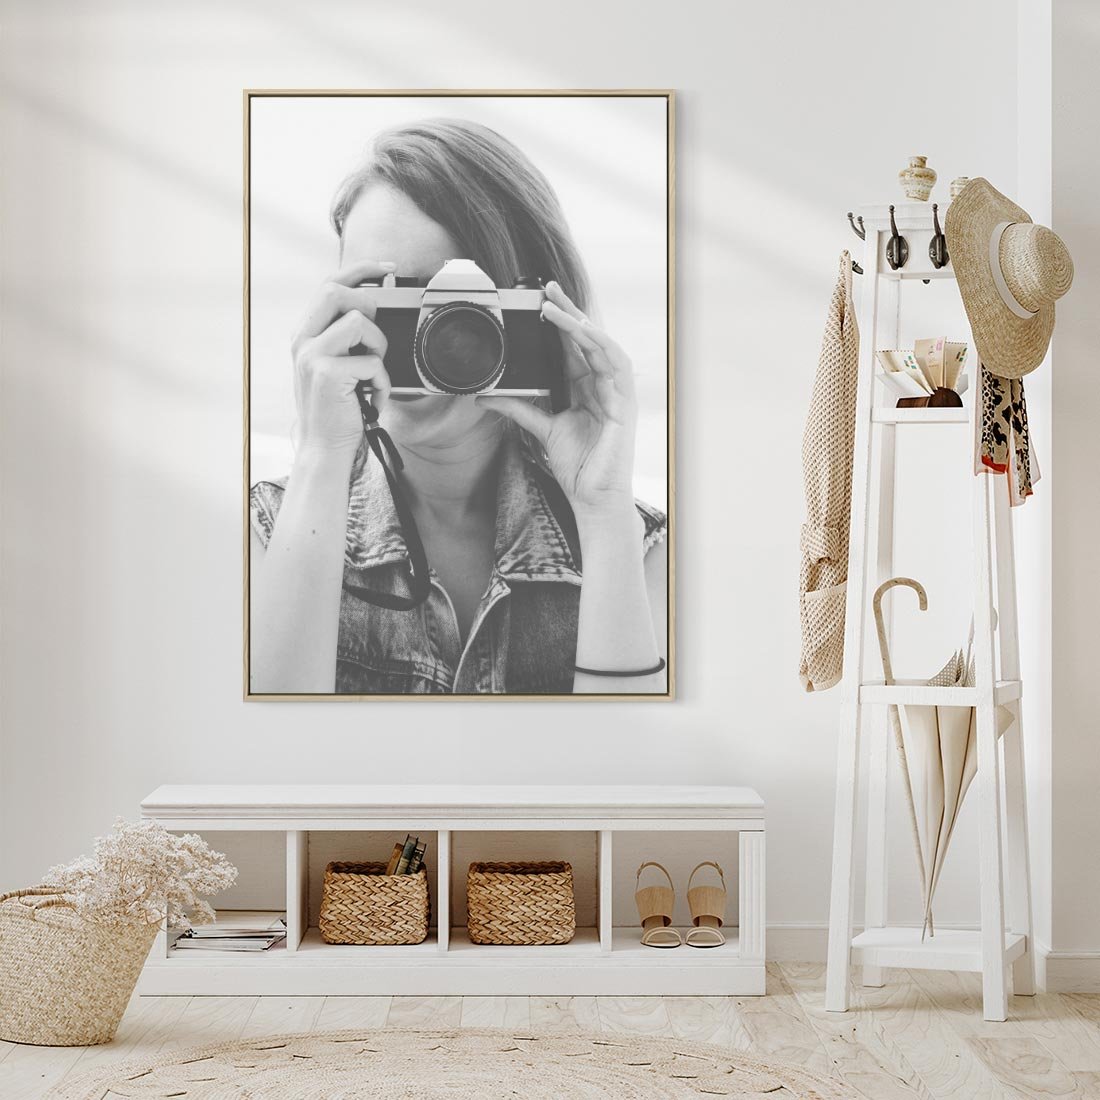 Obraz w ramie 50x70 - Zrób mi Zdjęcie - fotografia, kobieta z aparatem - rama drewno